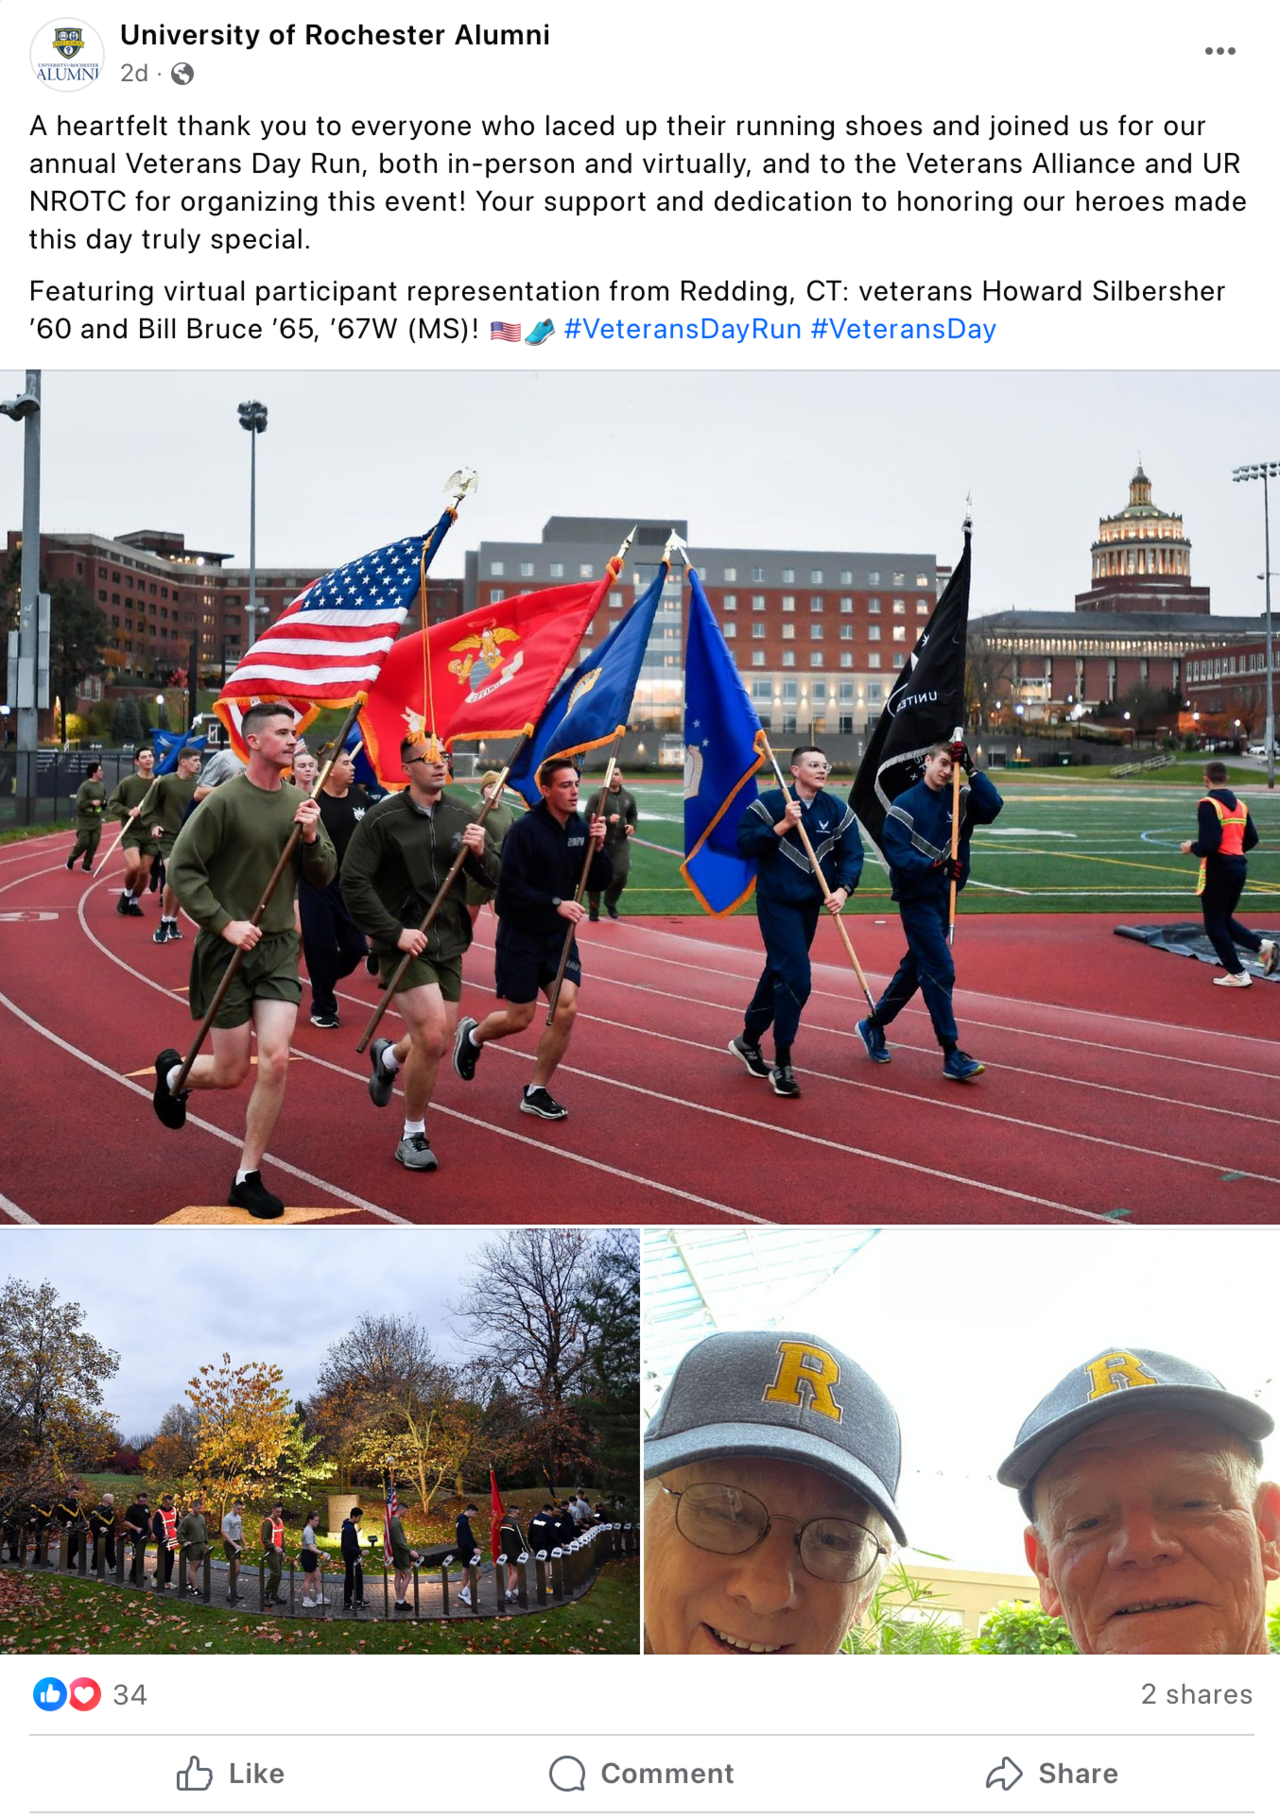 Screenshot of Facebook post about Veterans Day Run